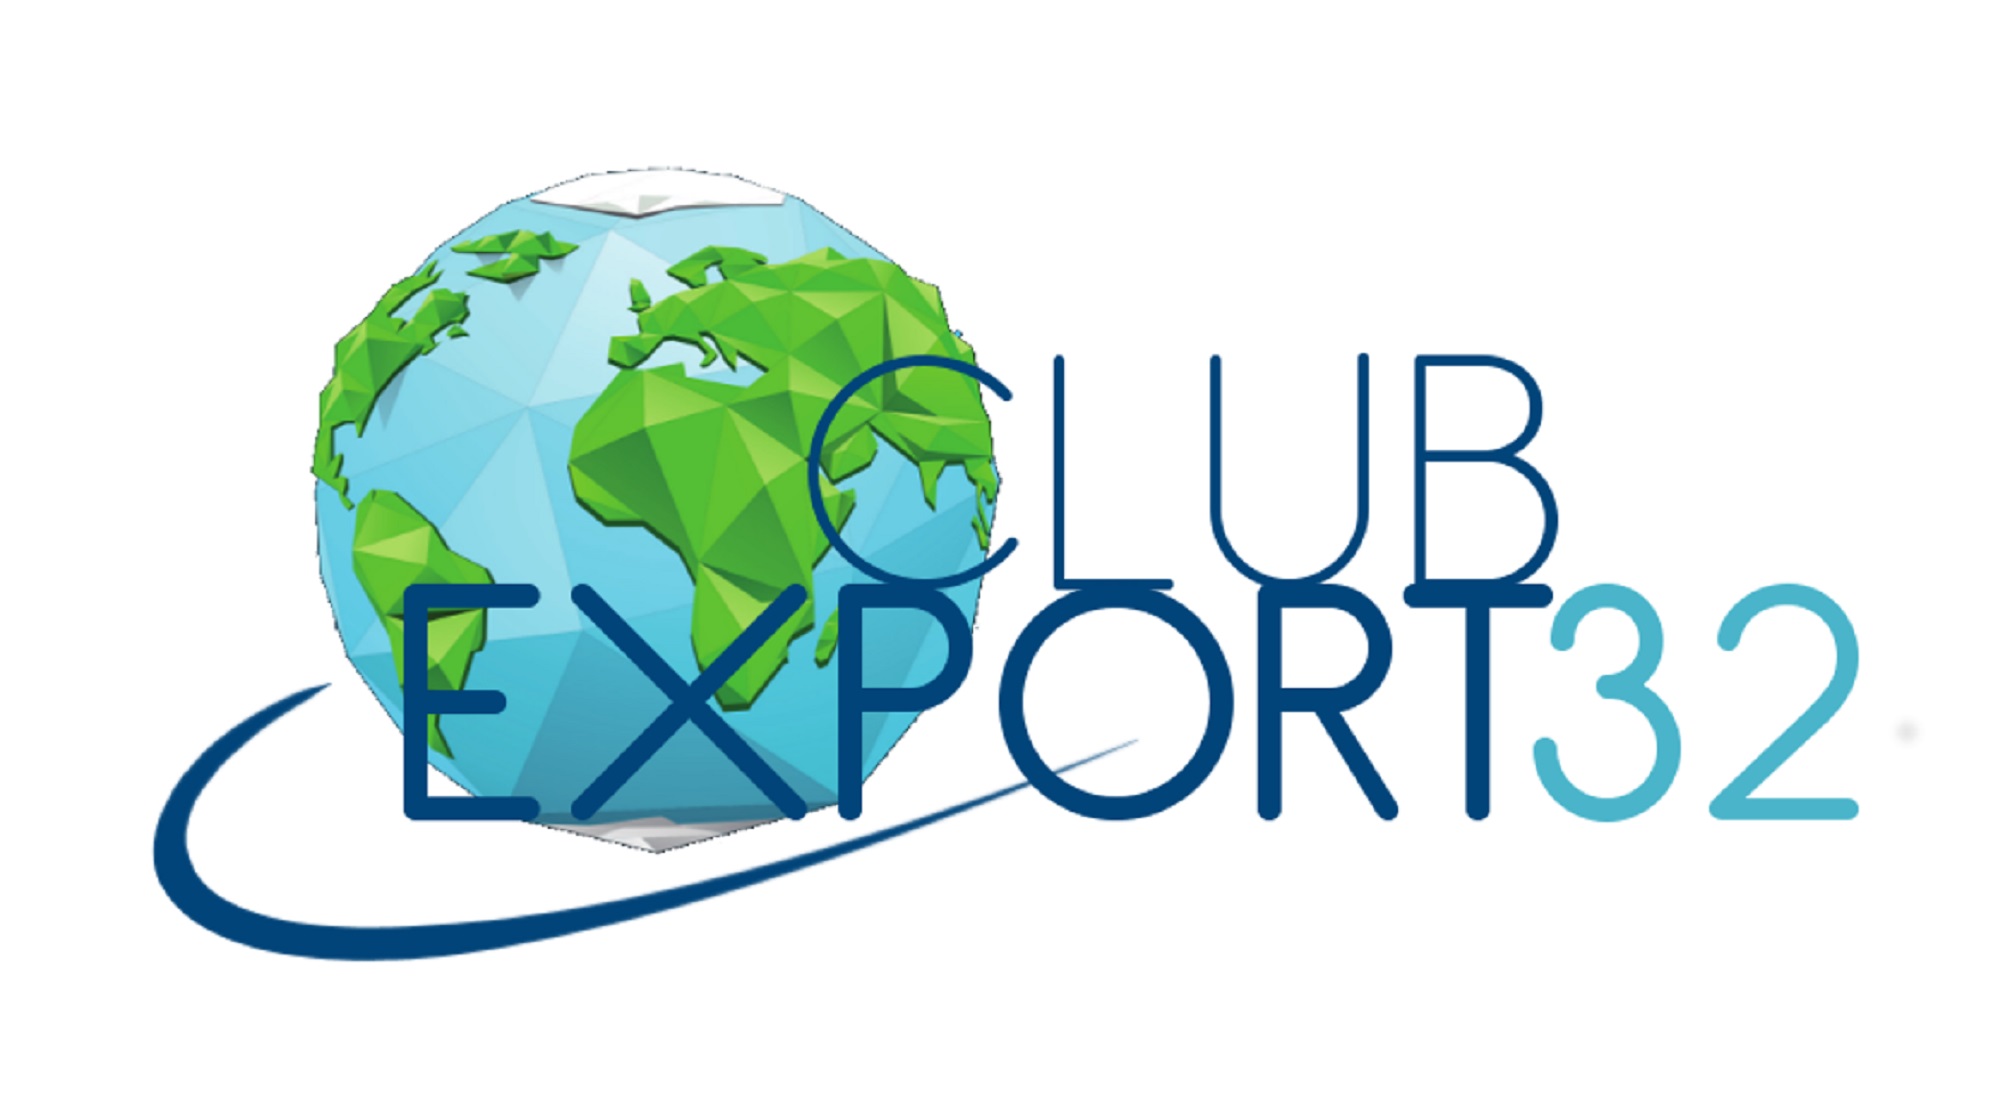 Club Export 32